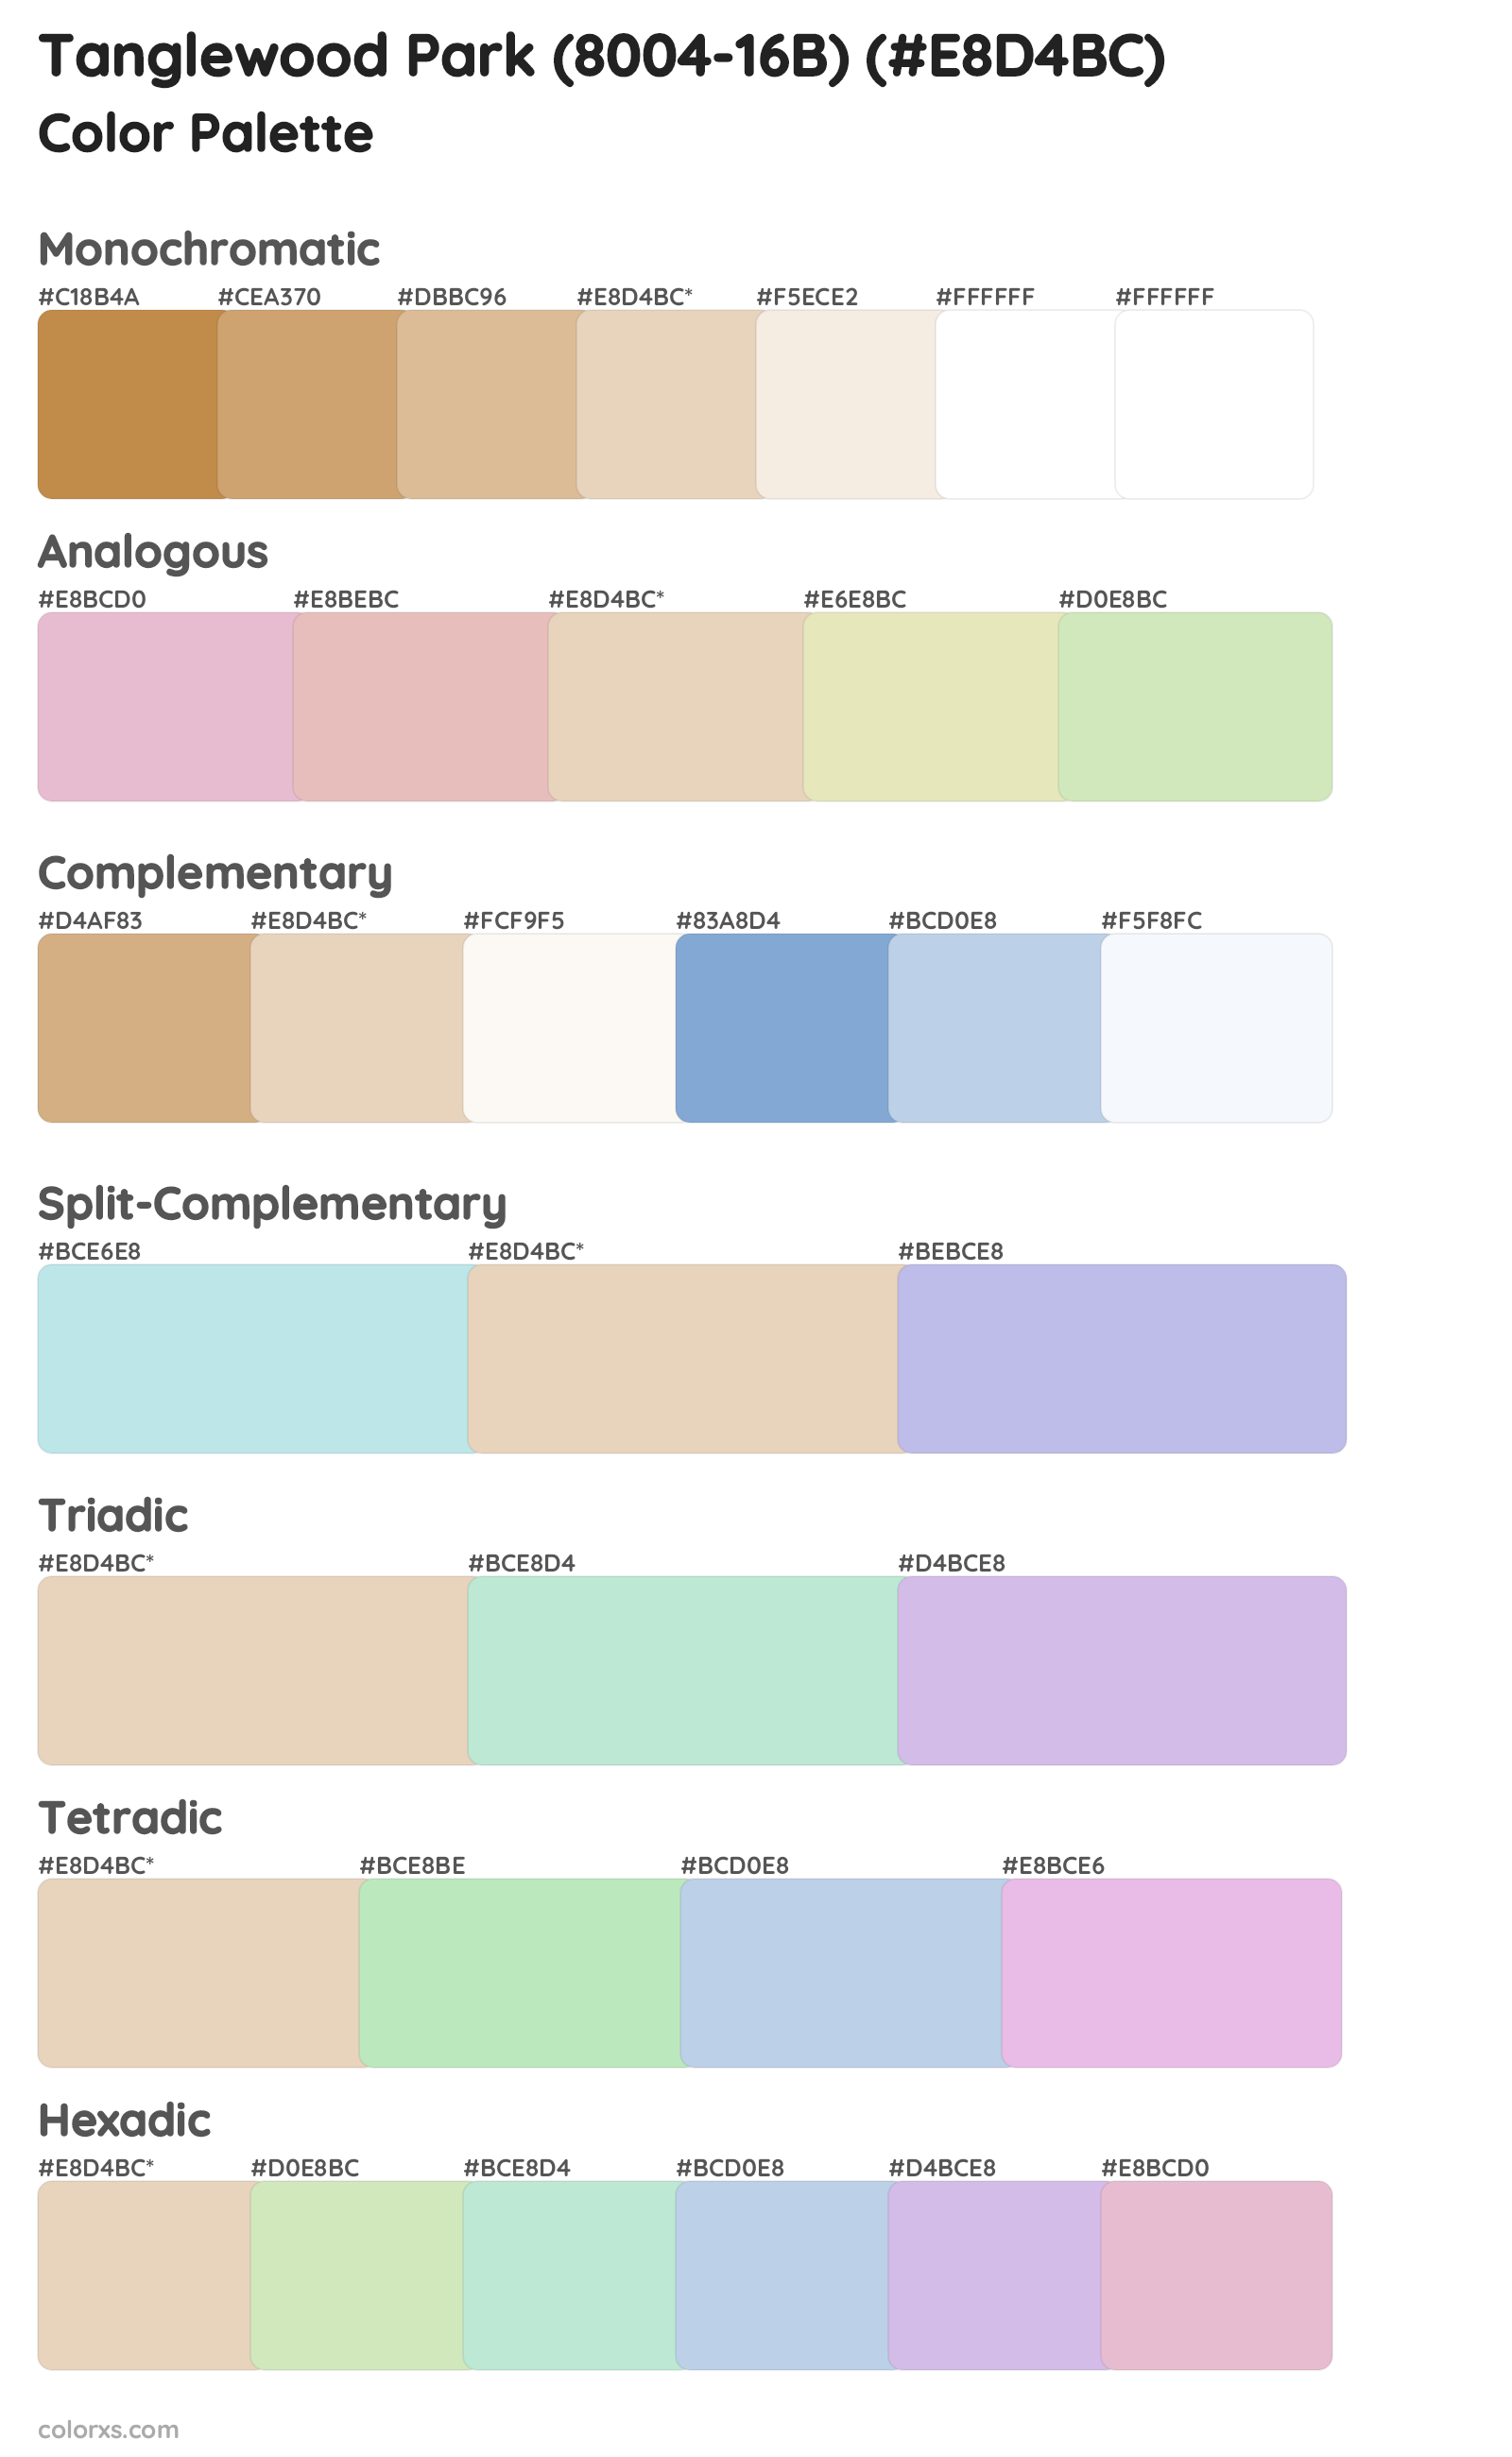 Tanglewood Park (8004-16B) Color Scheme Palettes